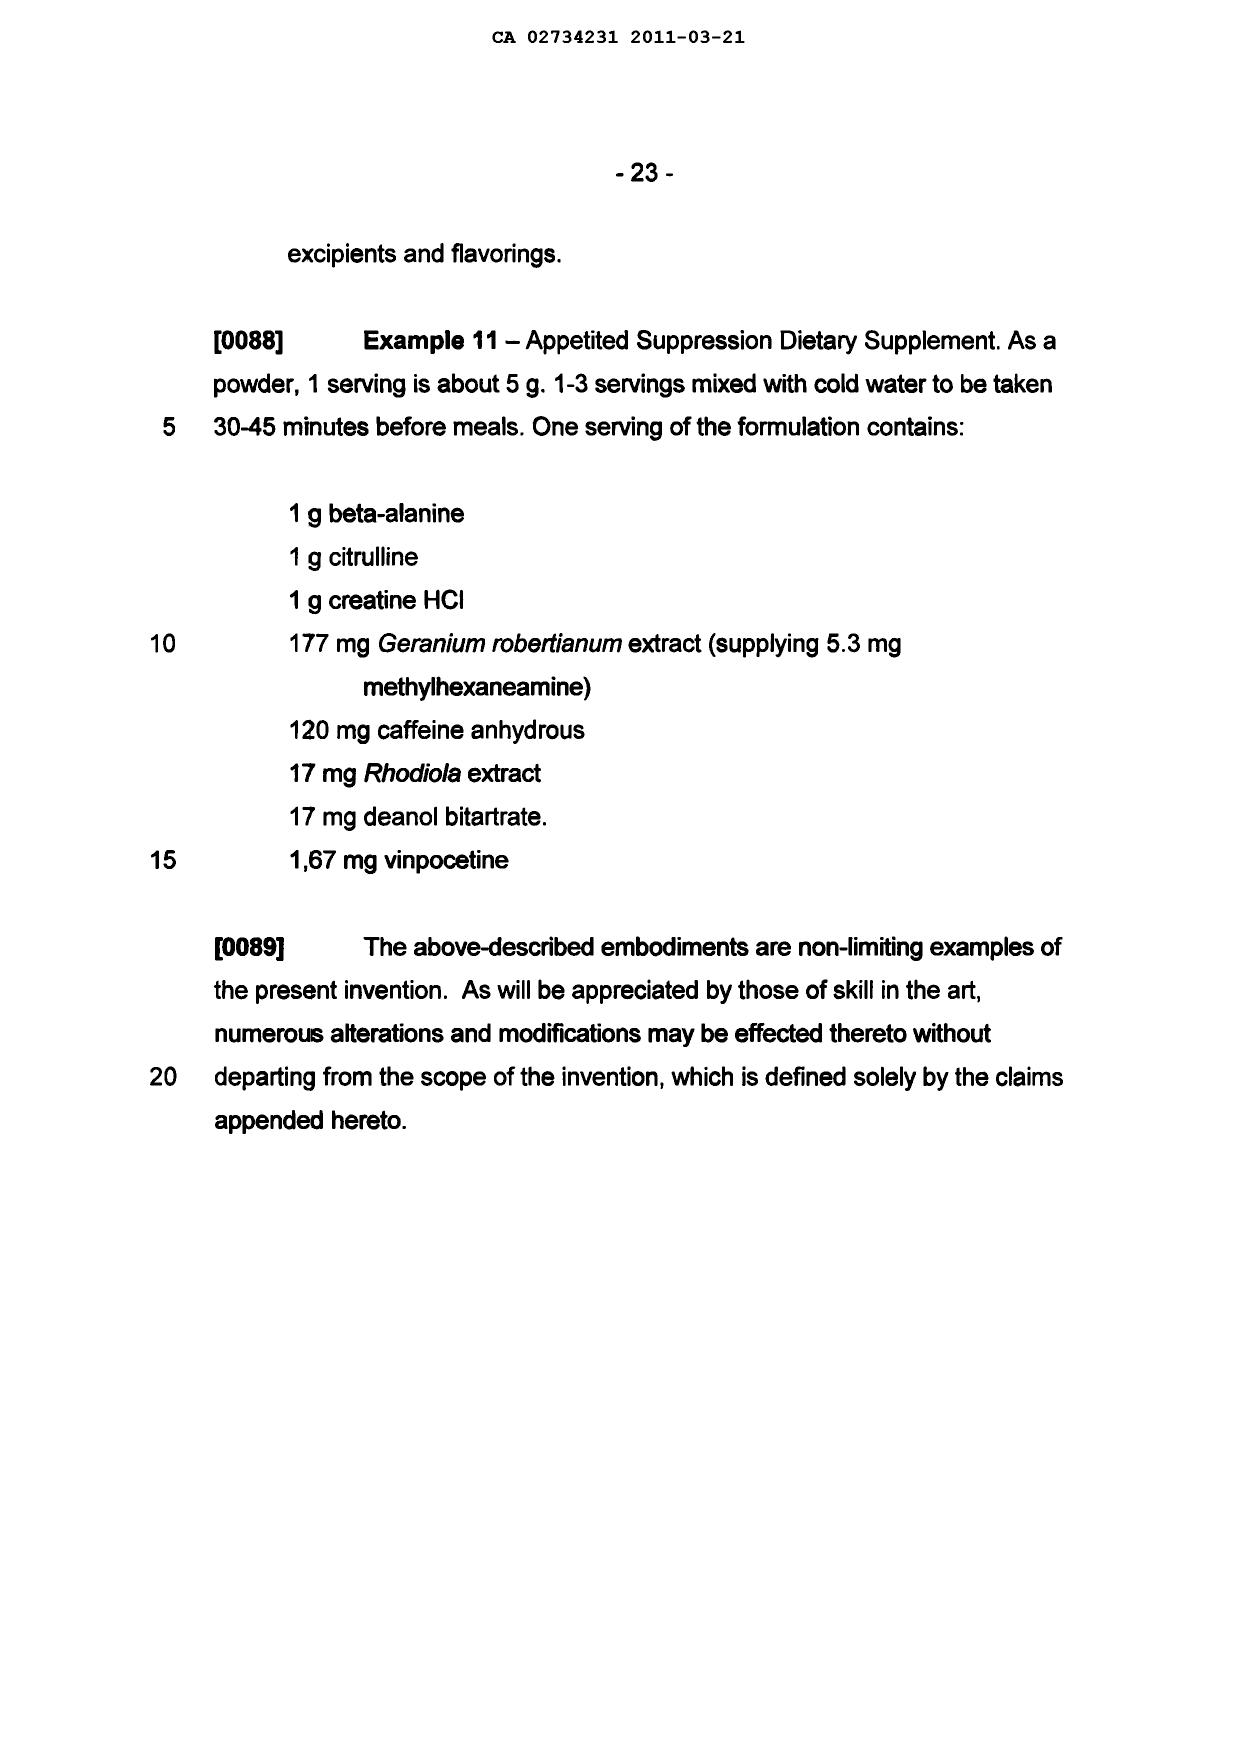 Canadian Patent Document 2734231. Description 20101221. Image 23 of 23